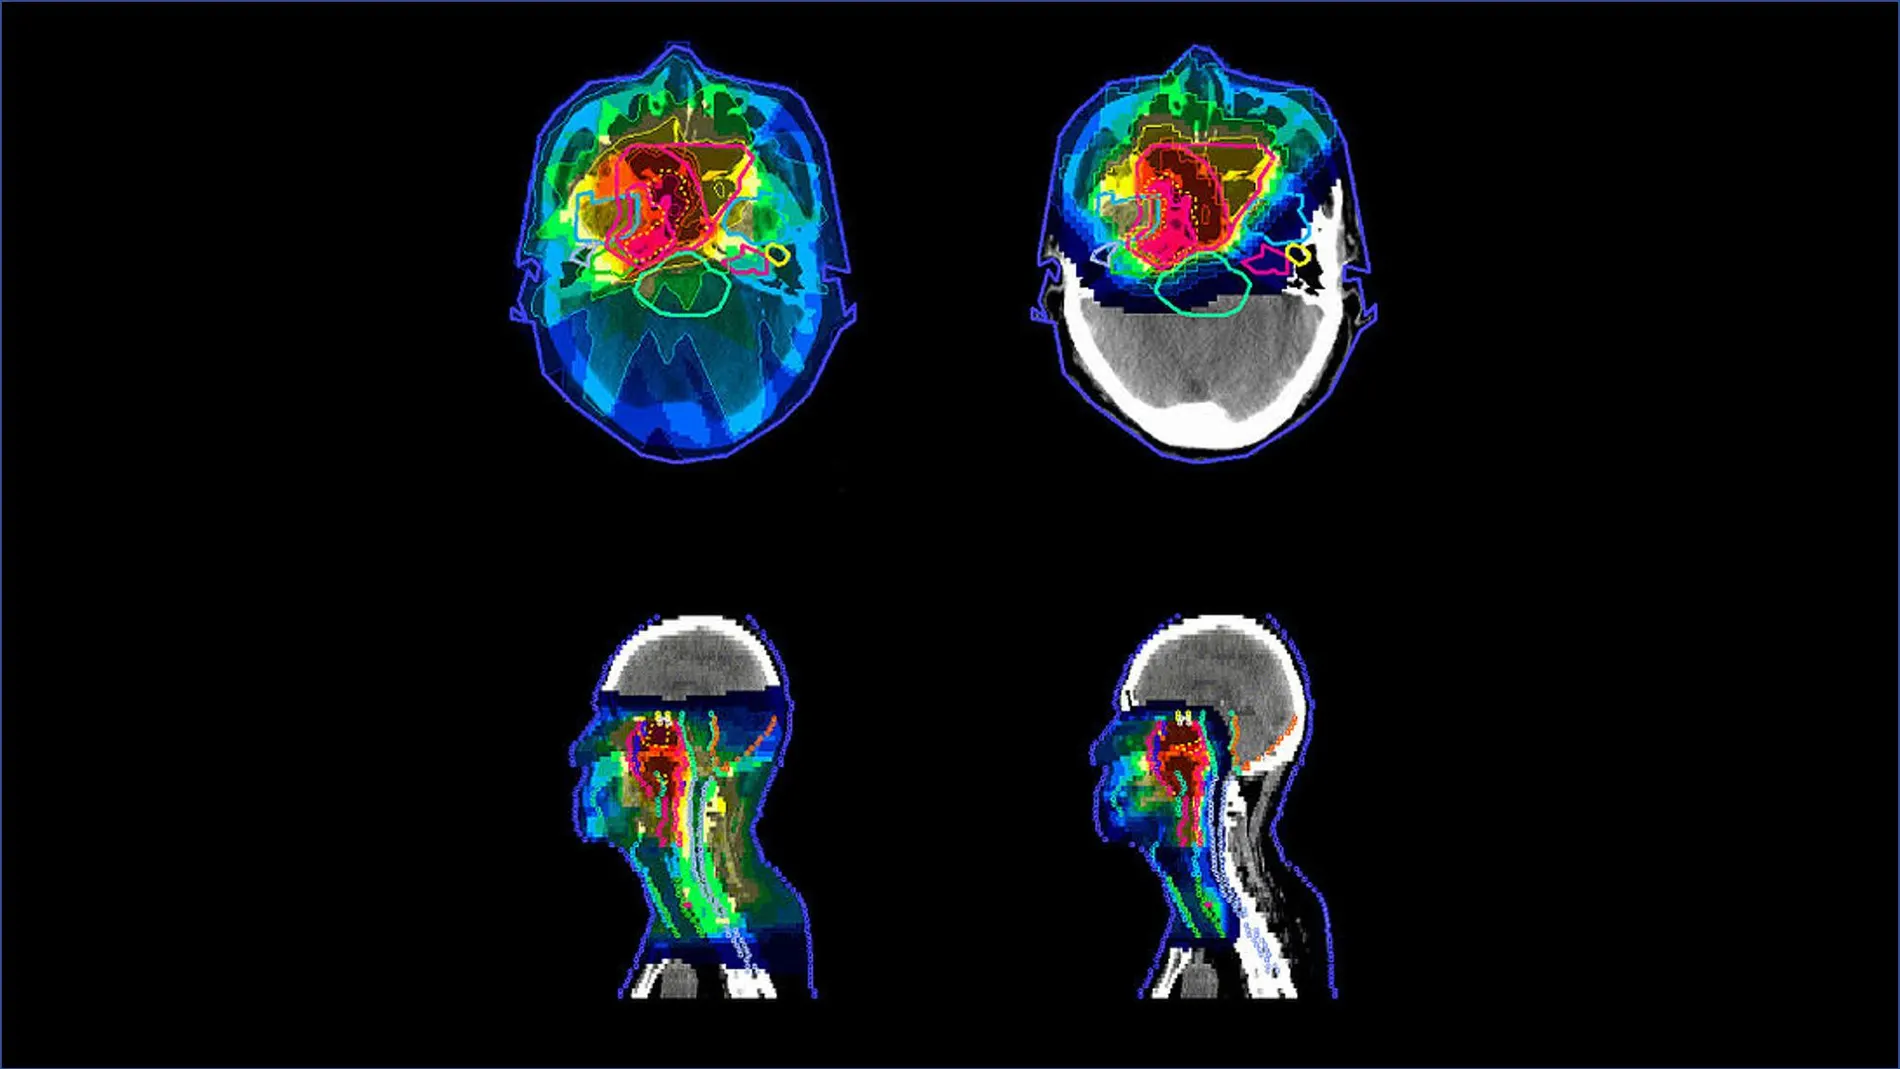 Distribución de la radiación en el cuerpo siendo representando el marrón la mayor intensidad y el azul oscuro la menor. A la izquierda se observa la distribución conseguida con radioterapia de intensidad modulada, a la derecha con protonterapia de intensidad modulada (un tipo de radioterapia.